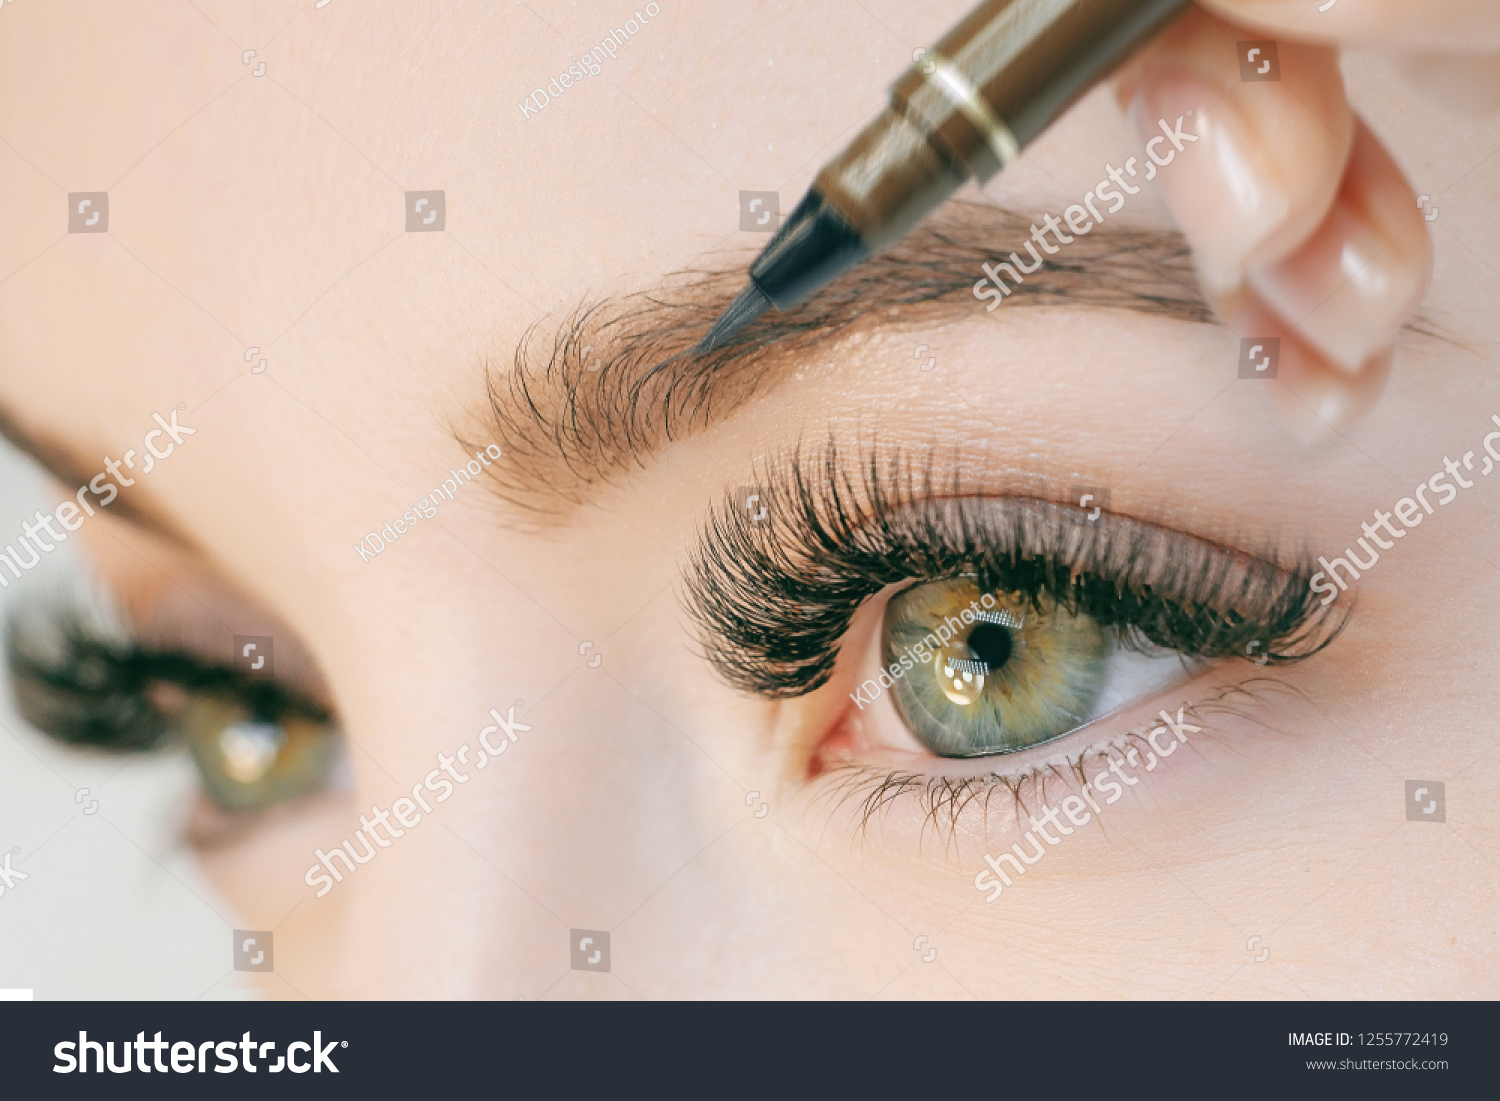 permanent long eyelashes